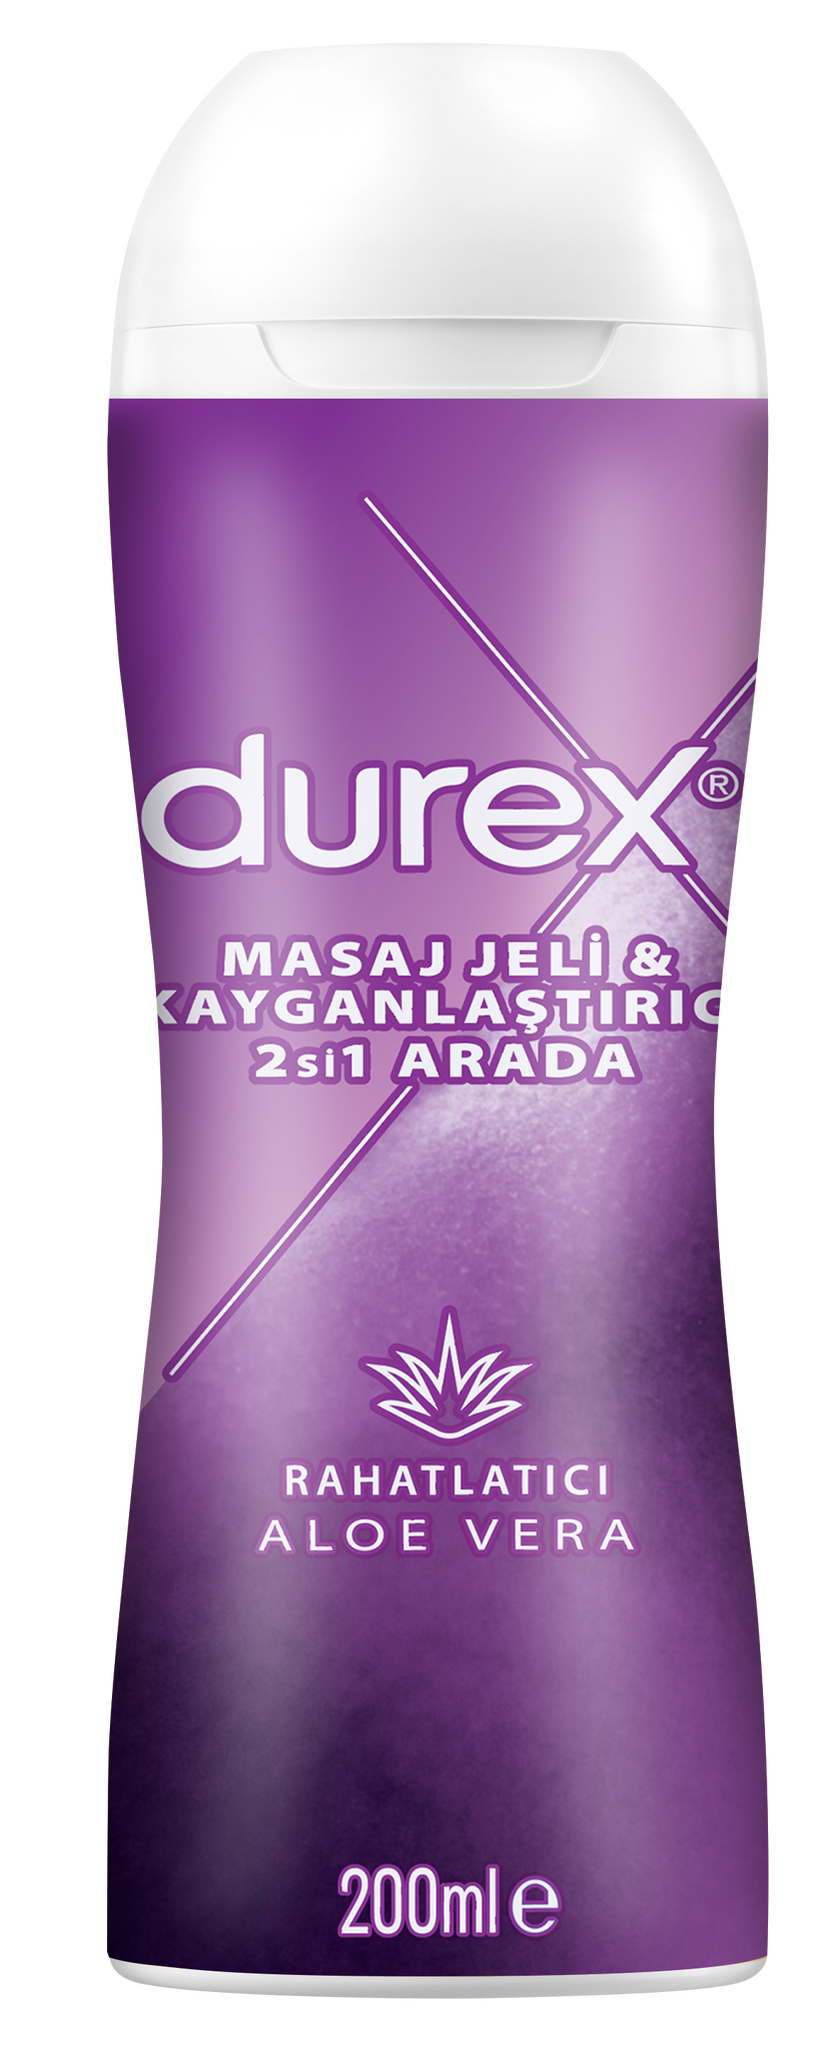 Durex Aloe Vera 2'si 1 Arada Masaj Jeli & Kayganlaştırıcı